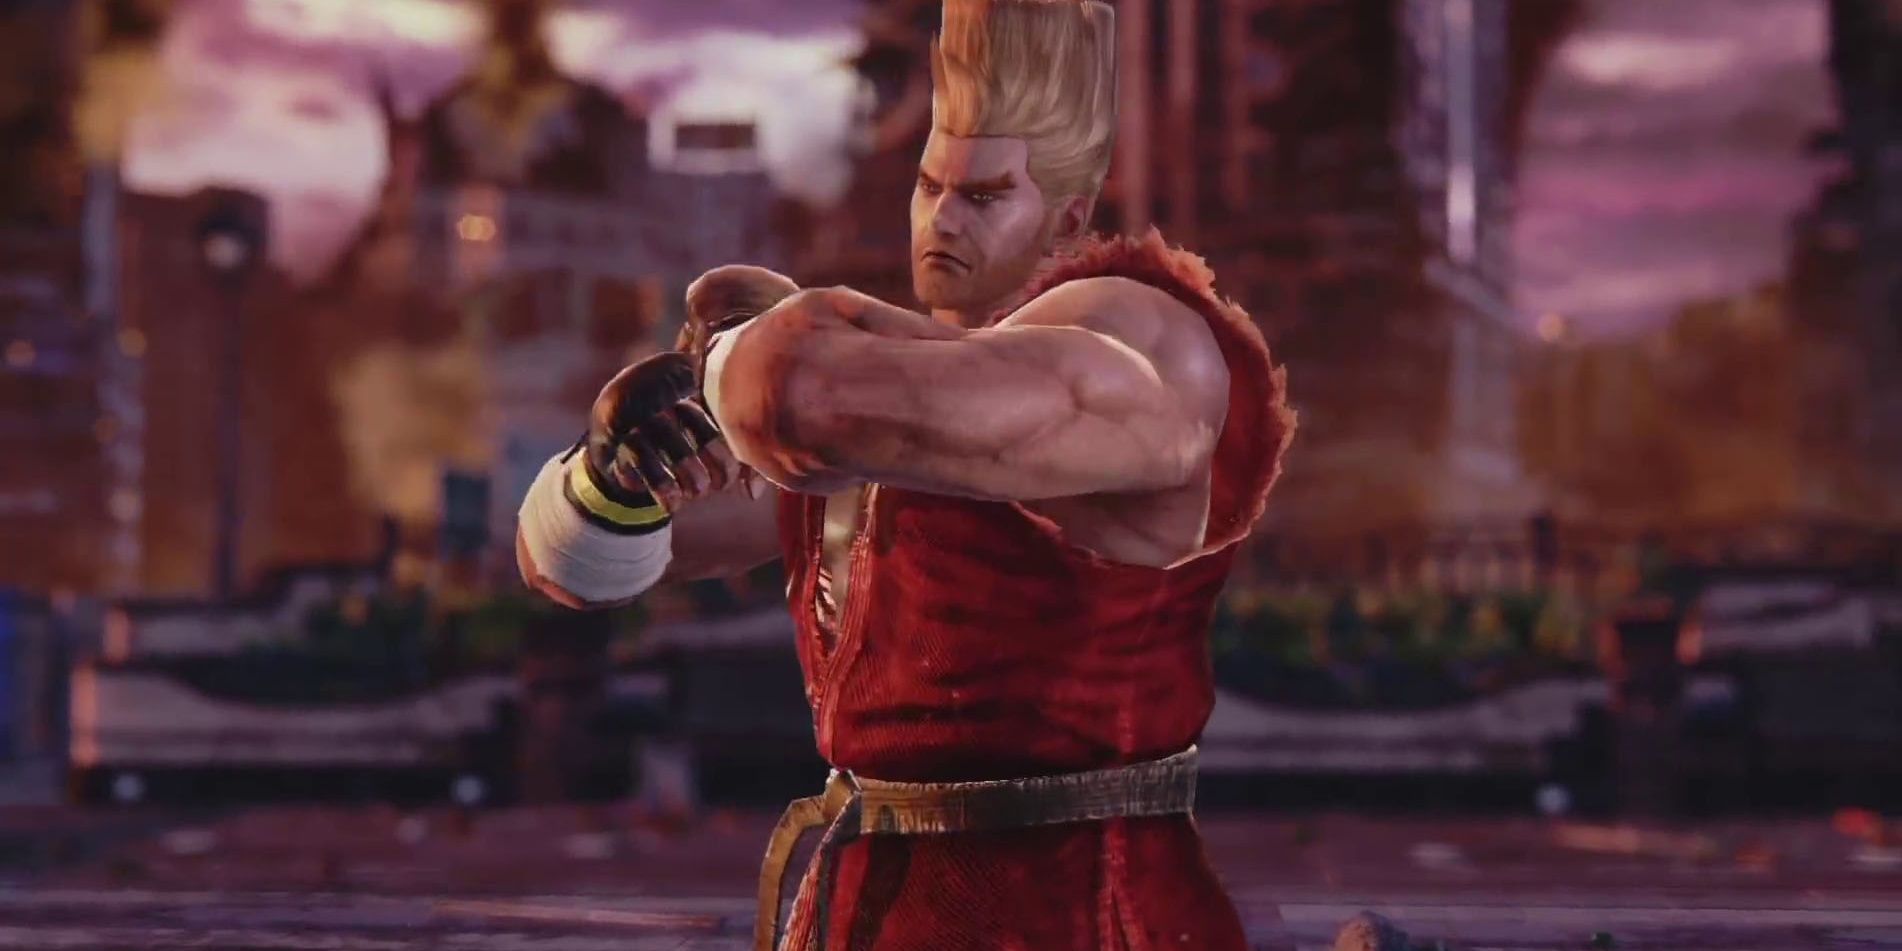 Paul-Phoenix gets ready to fight in Tekken 7